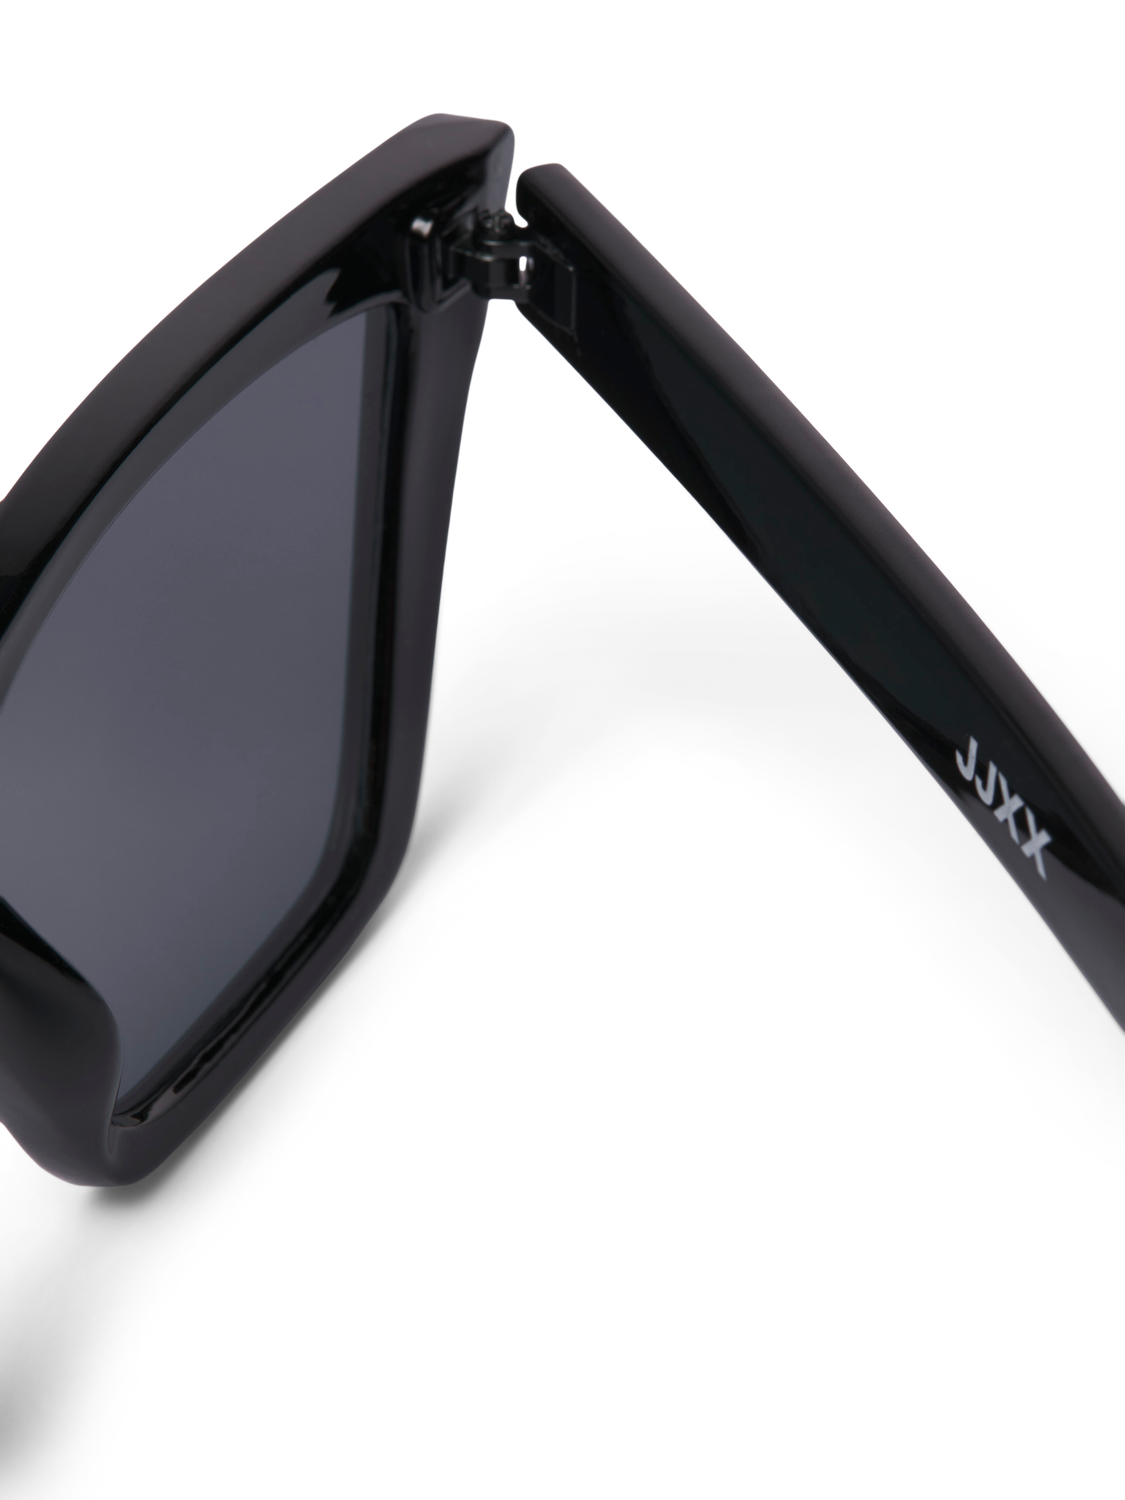 JJXX JXKENT Sluneční brýle -Black - 12251639